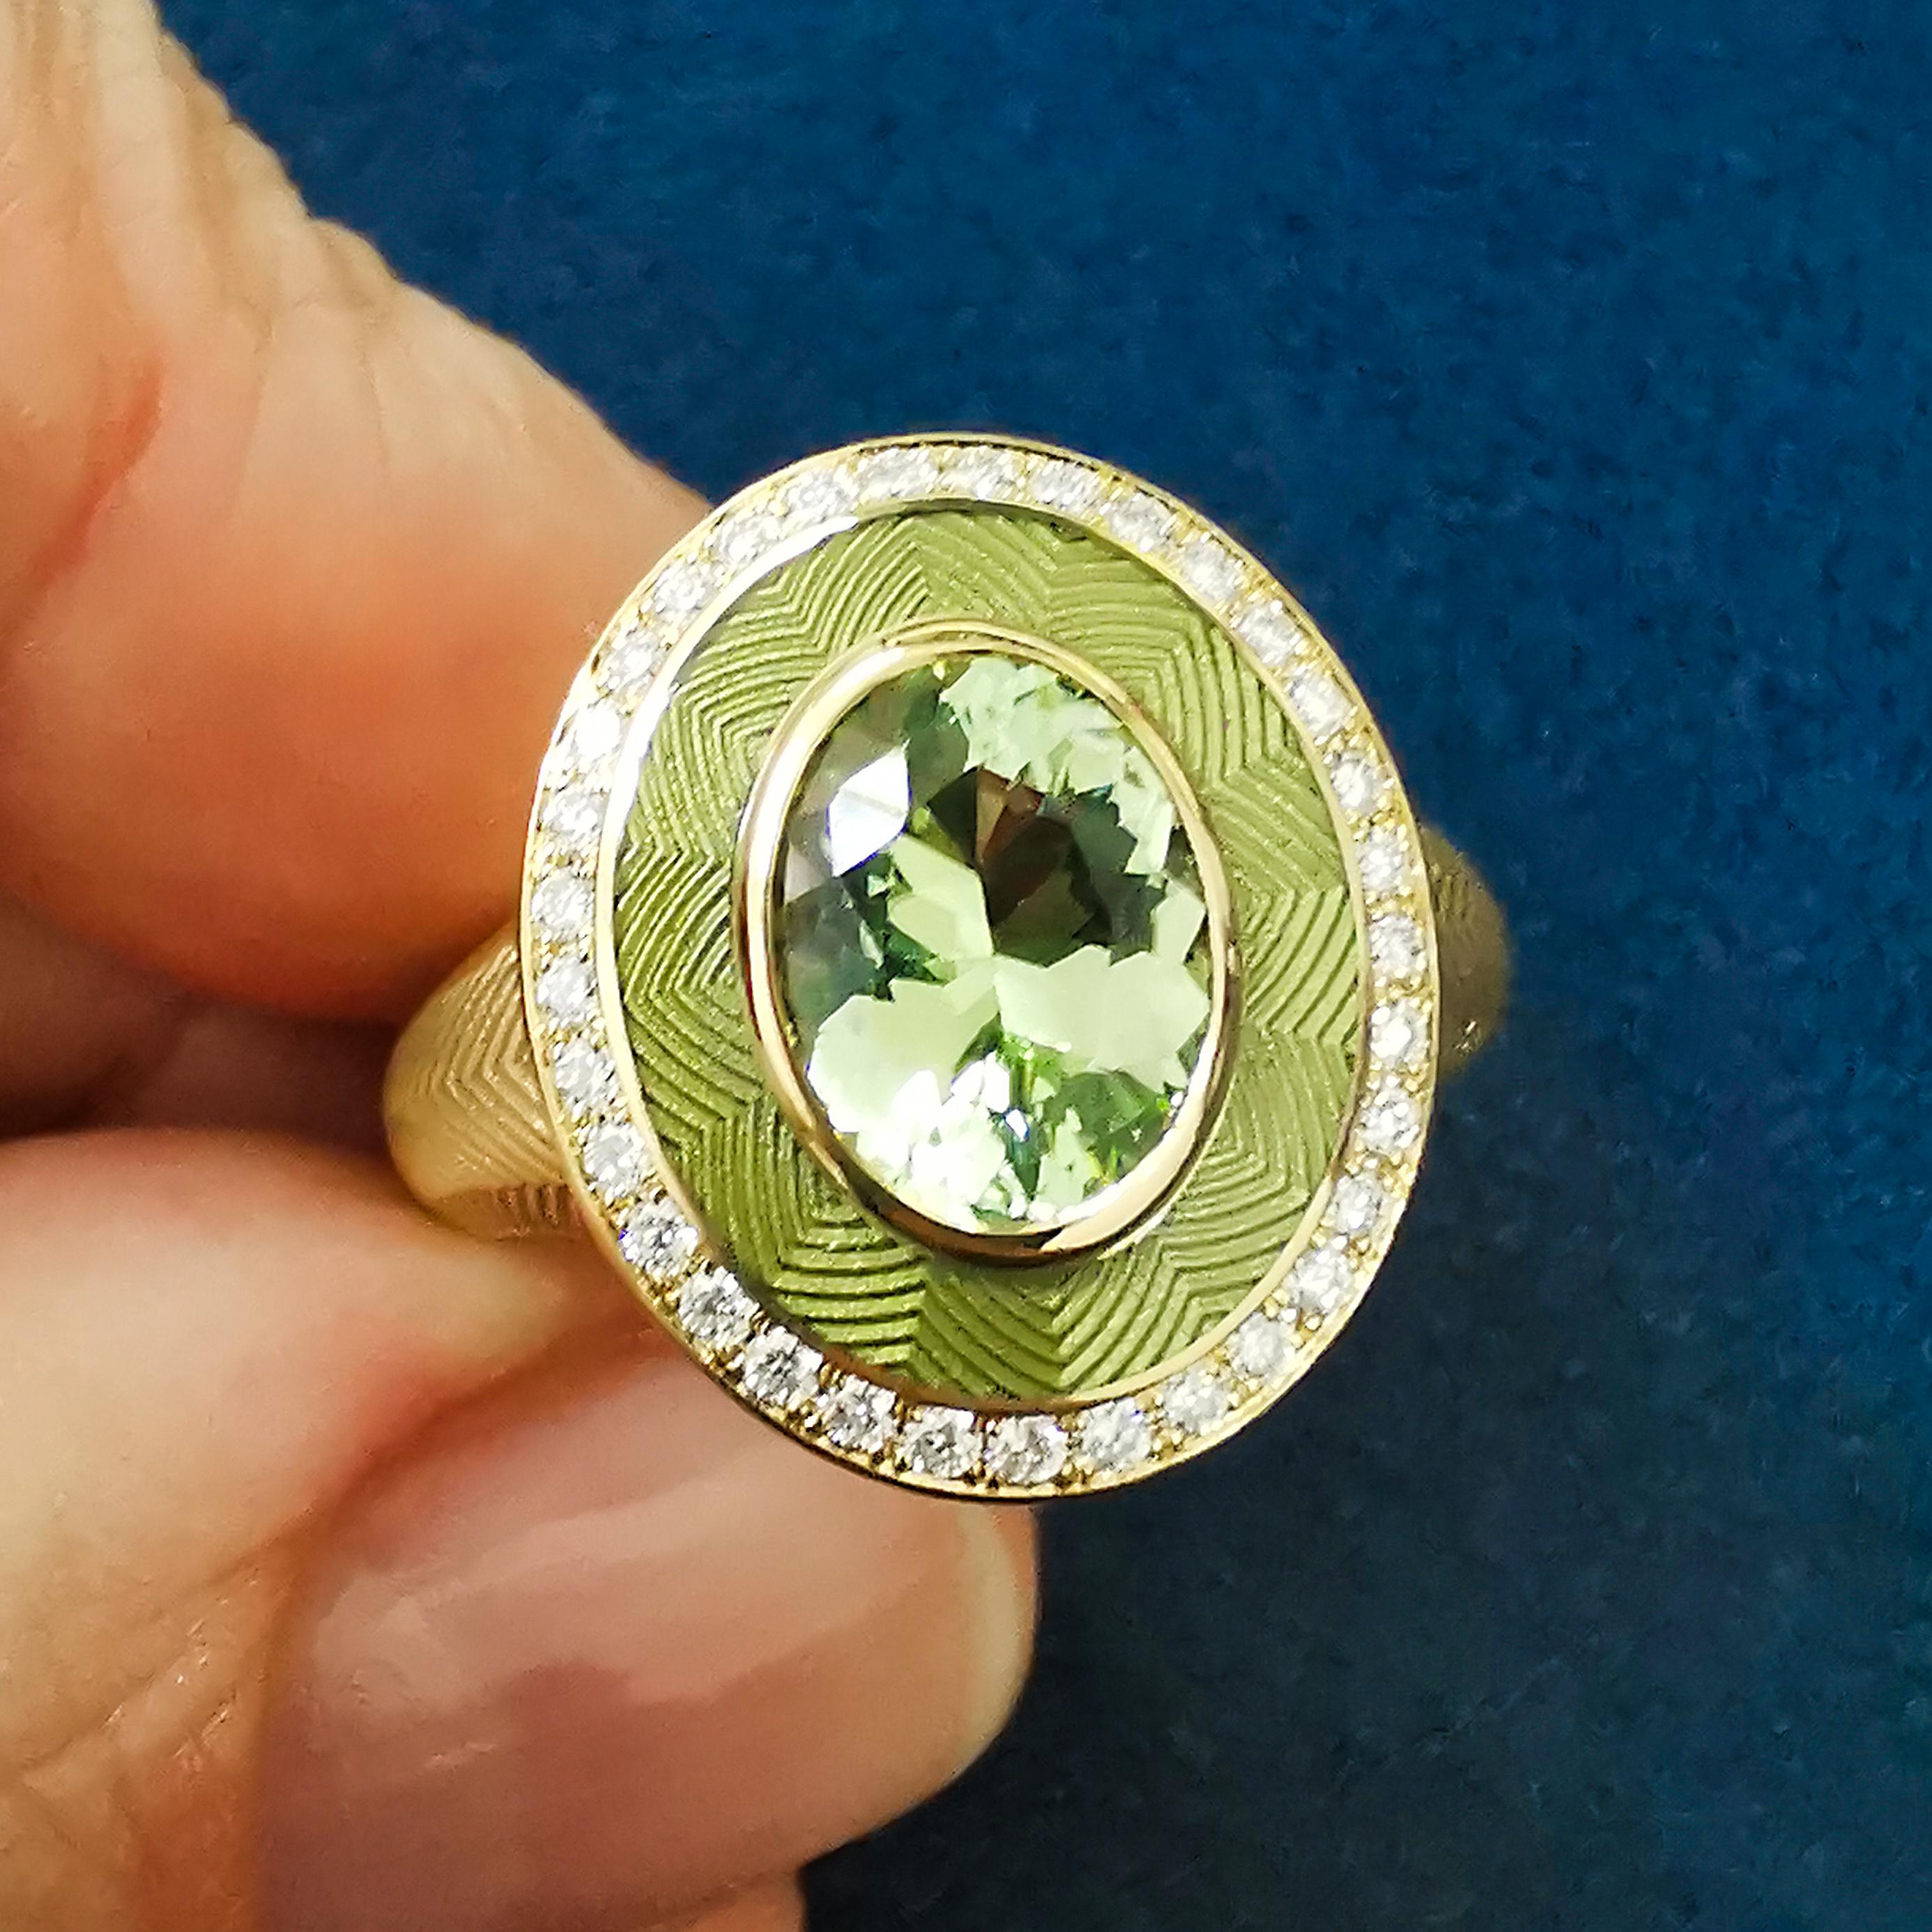 Grüner Turmalin 1,40 Karat Diamanten Emaille 18 Karat Gelbgold Tweed-Ring

Vielleicht ist dies der hellste und beliebteste Vertreter der Pret-a-Porter Collection. Die Textur von Tweed erinnert an den bekannten Stoff, aber vor allem an die alte